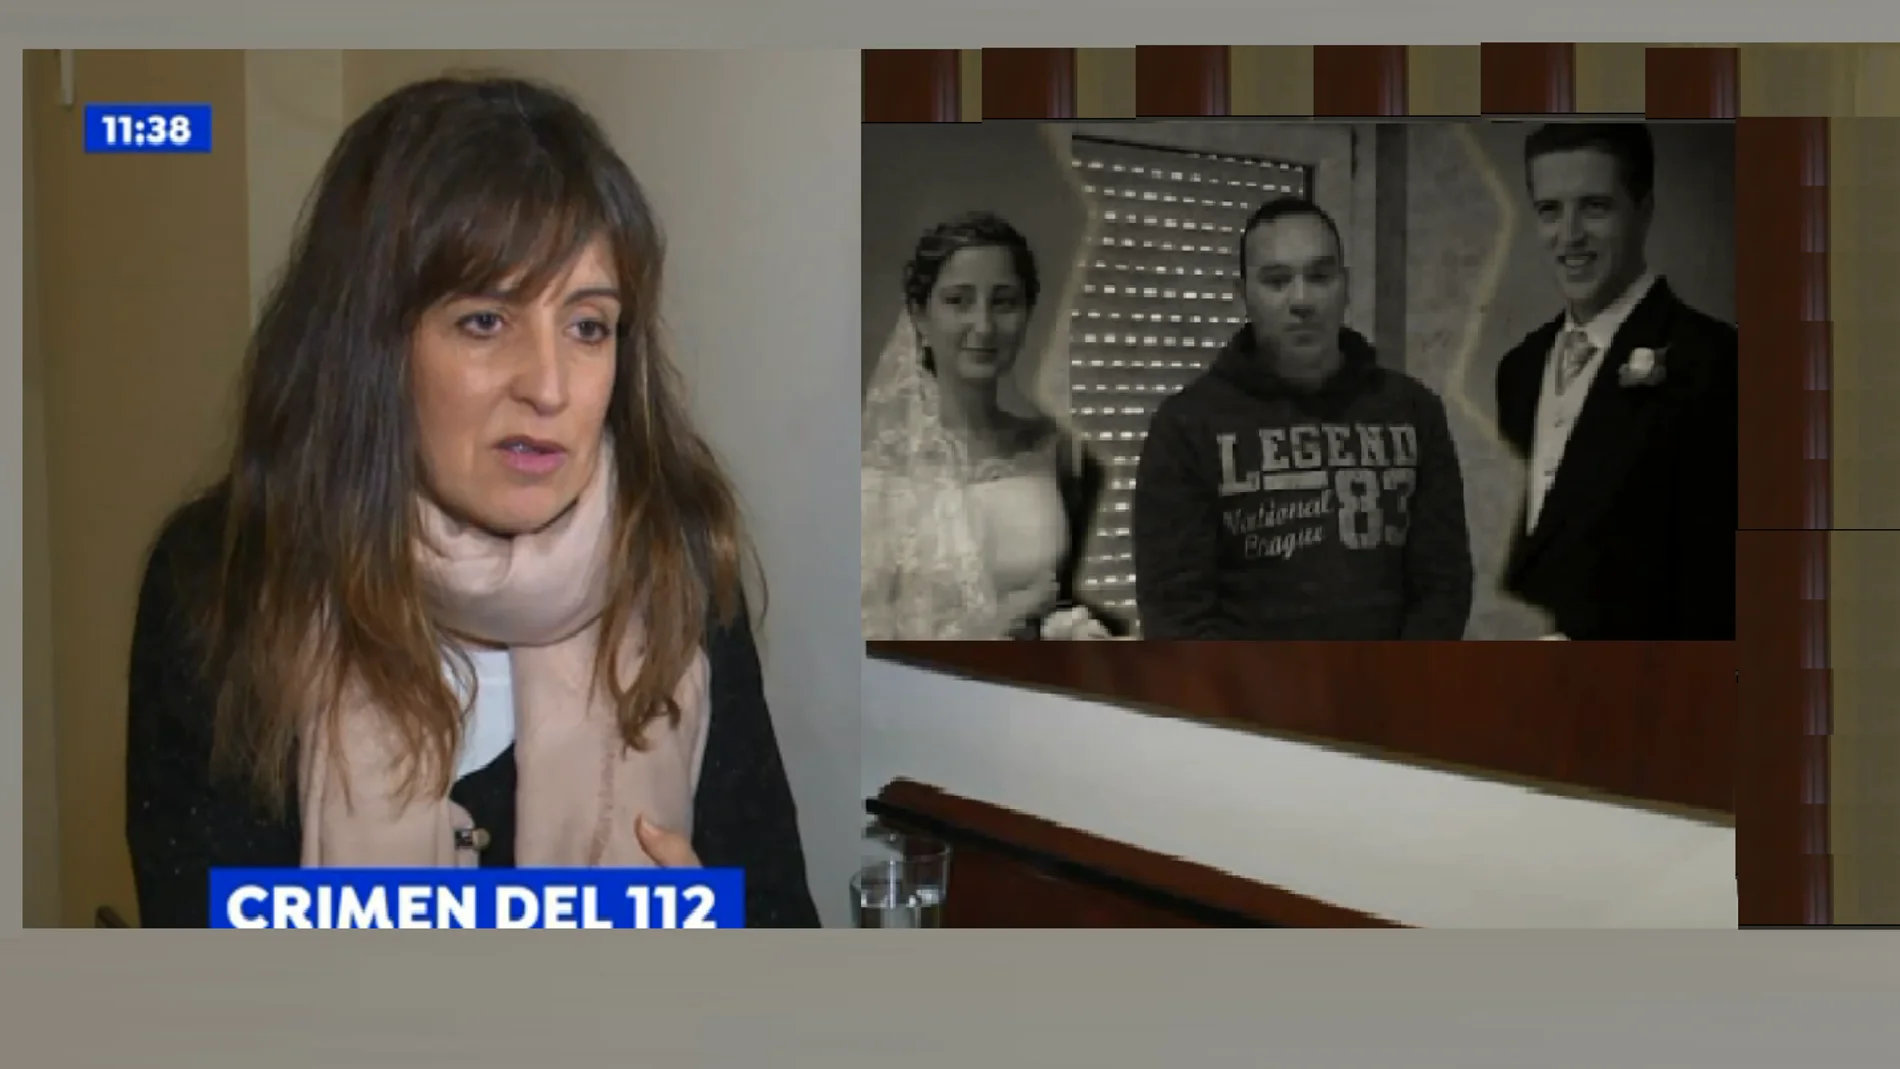 La hermana de la víctima del 'crimen del 112': "No queremos condenar a nadie que no sea culpable, solo queremos justicia"